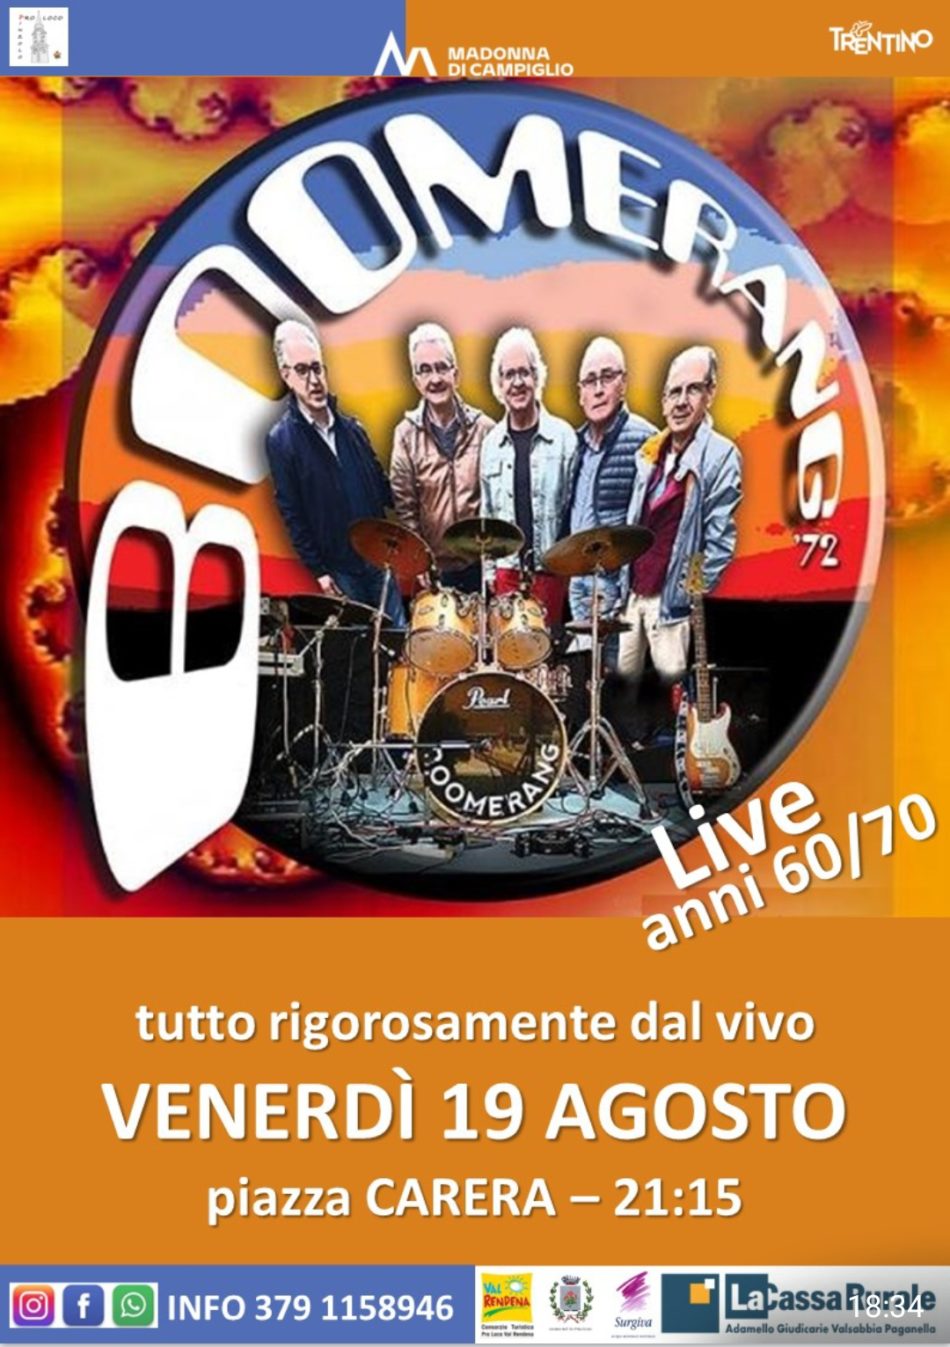 Pinzolo – Venerdi 19 agosto ore 21.15: concerto dei “Boomerang” in piazza Carera